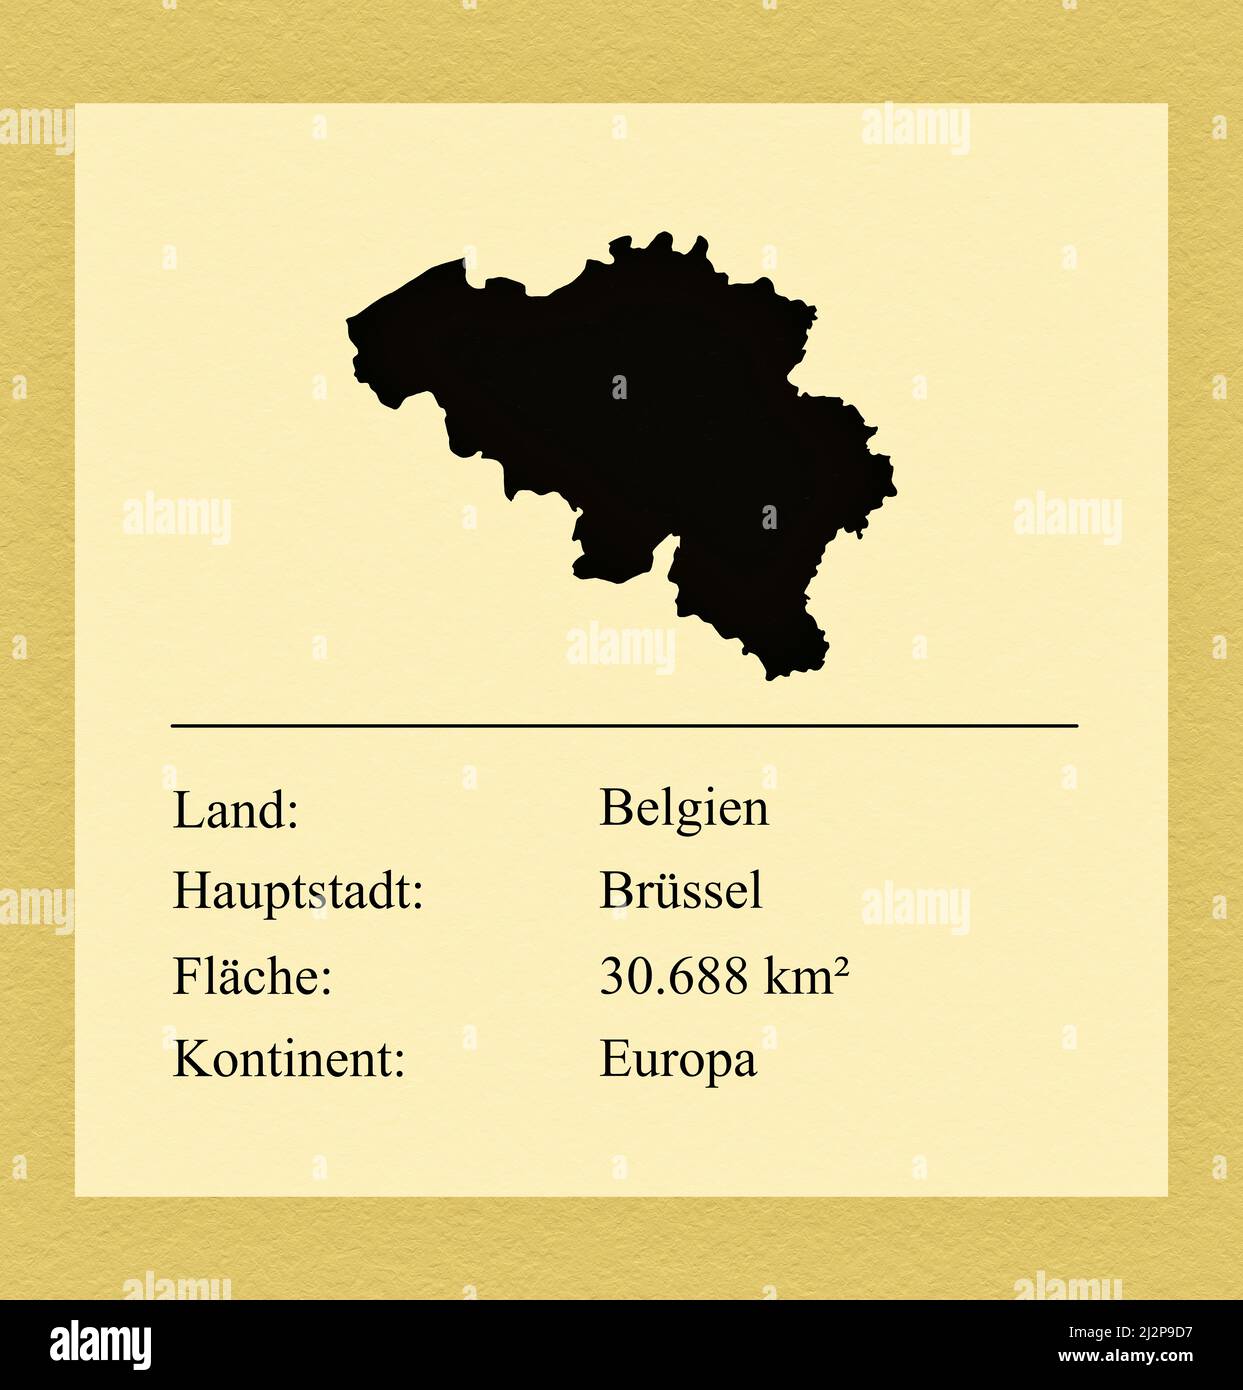 Umrisse des Landes Belgien, darunter ein kleiner Steckbrief mit Ländernamen, Hauptstadt, Fläche und Kontinent Stock Photo